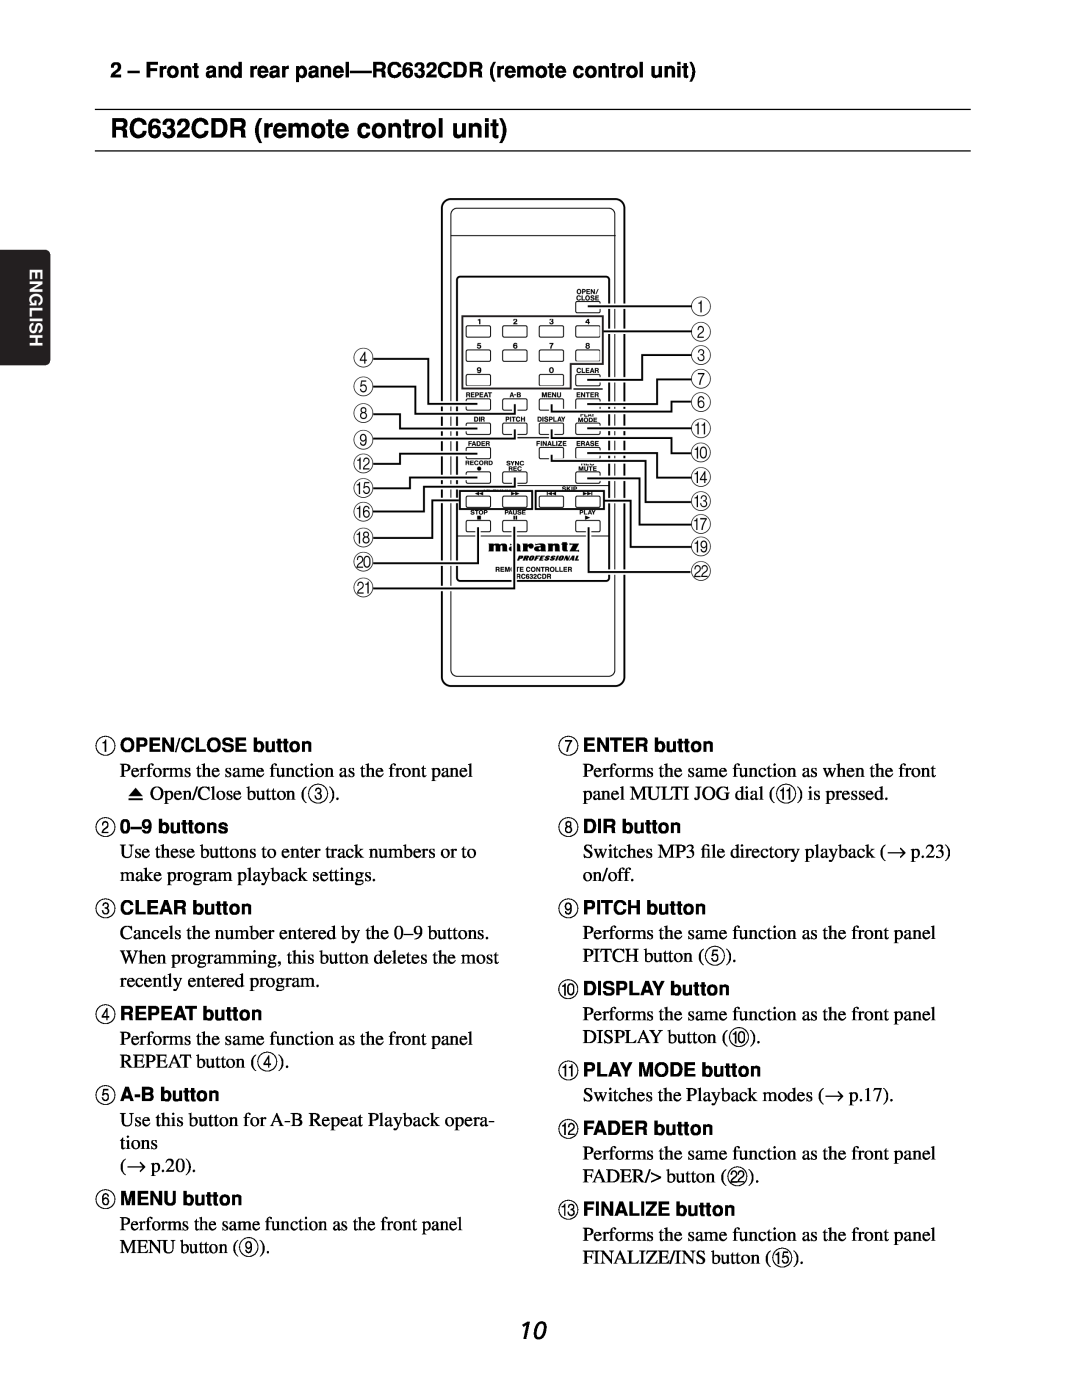 Marantz CDR632 manual RC632CDR remote control unit 